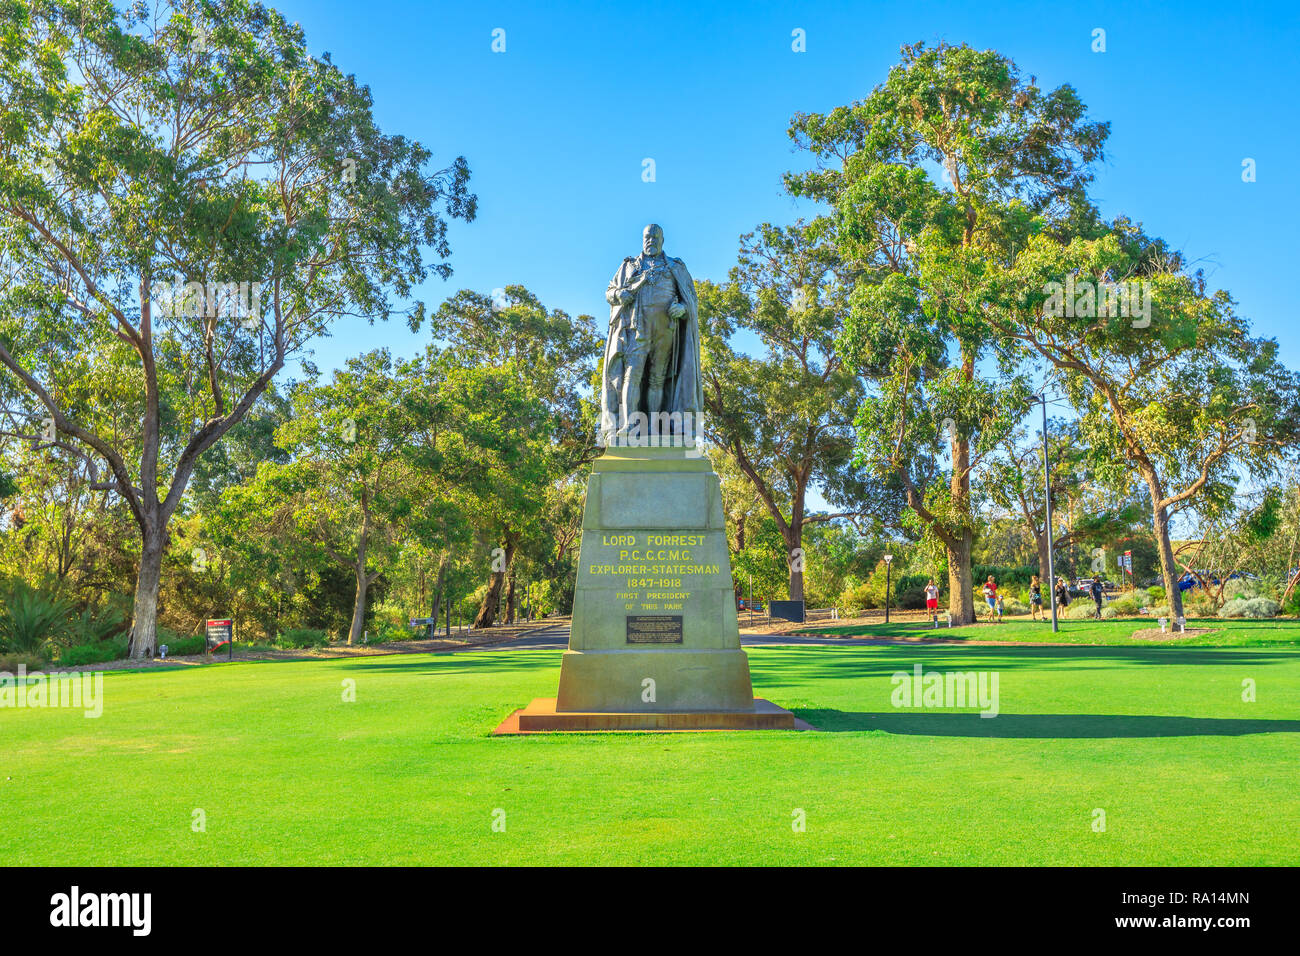 Perth, Australien - Jan 3, 2018: John Forrest Statue, der erste Premier von Western Australia im Kings Park, dem beliebtesten Besucher Ziel in WA auf dem Mount Eliza in Perth. Sonnigen Tag mit blauen Himmel. Stockfoto